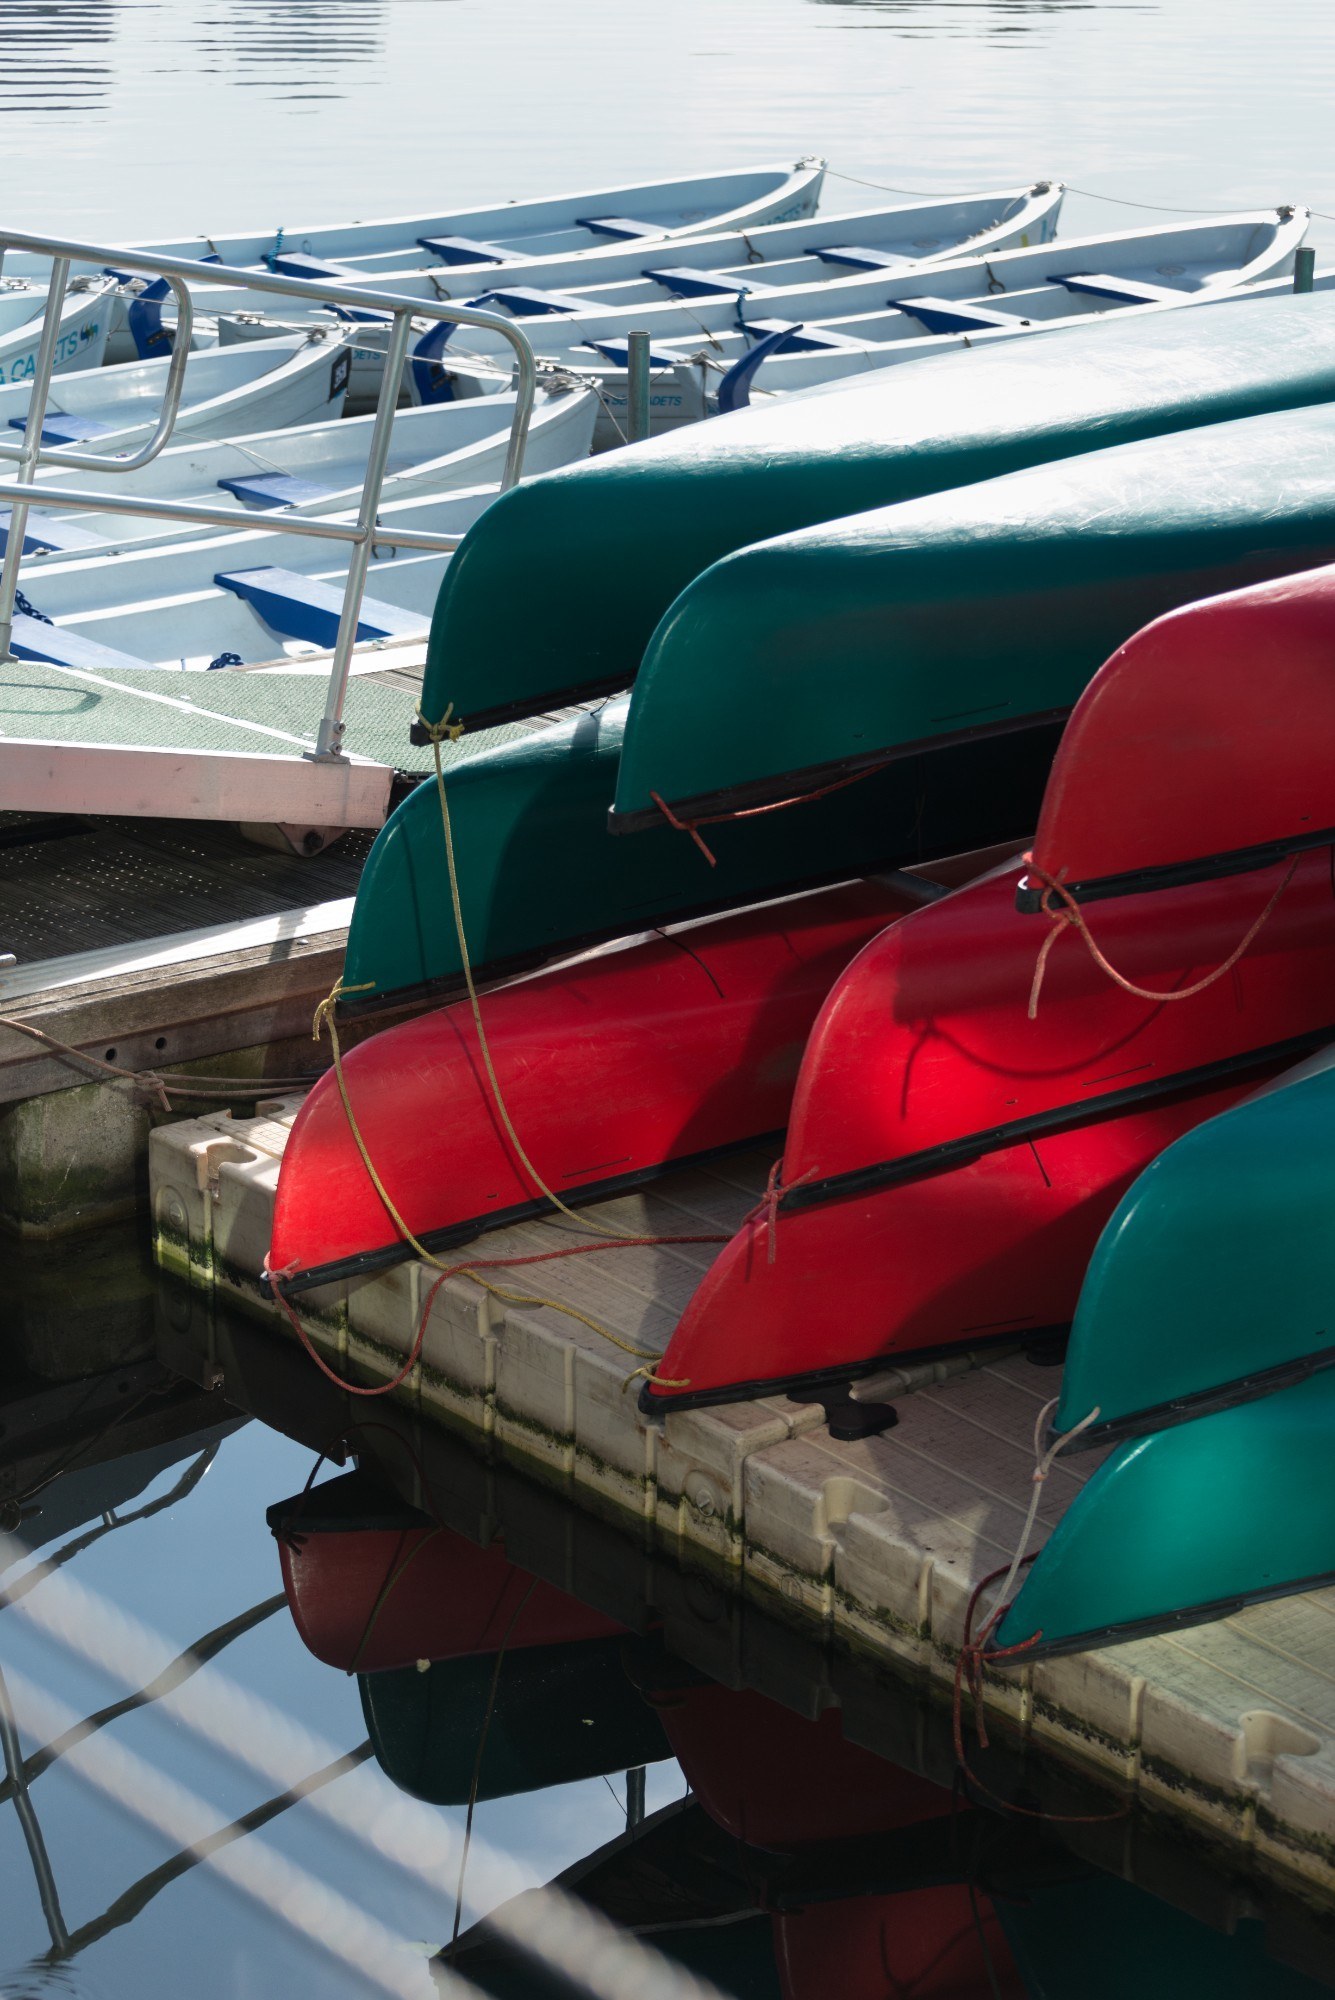 Boats stored at the Royal Docks